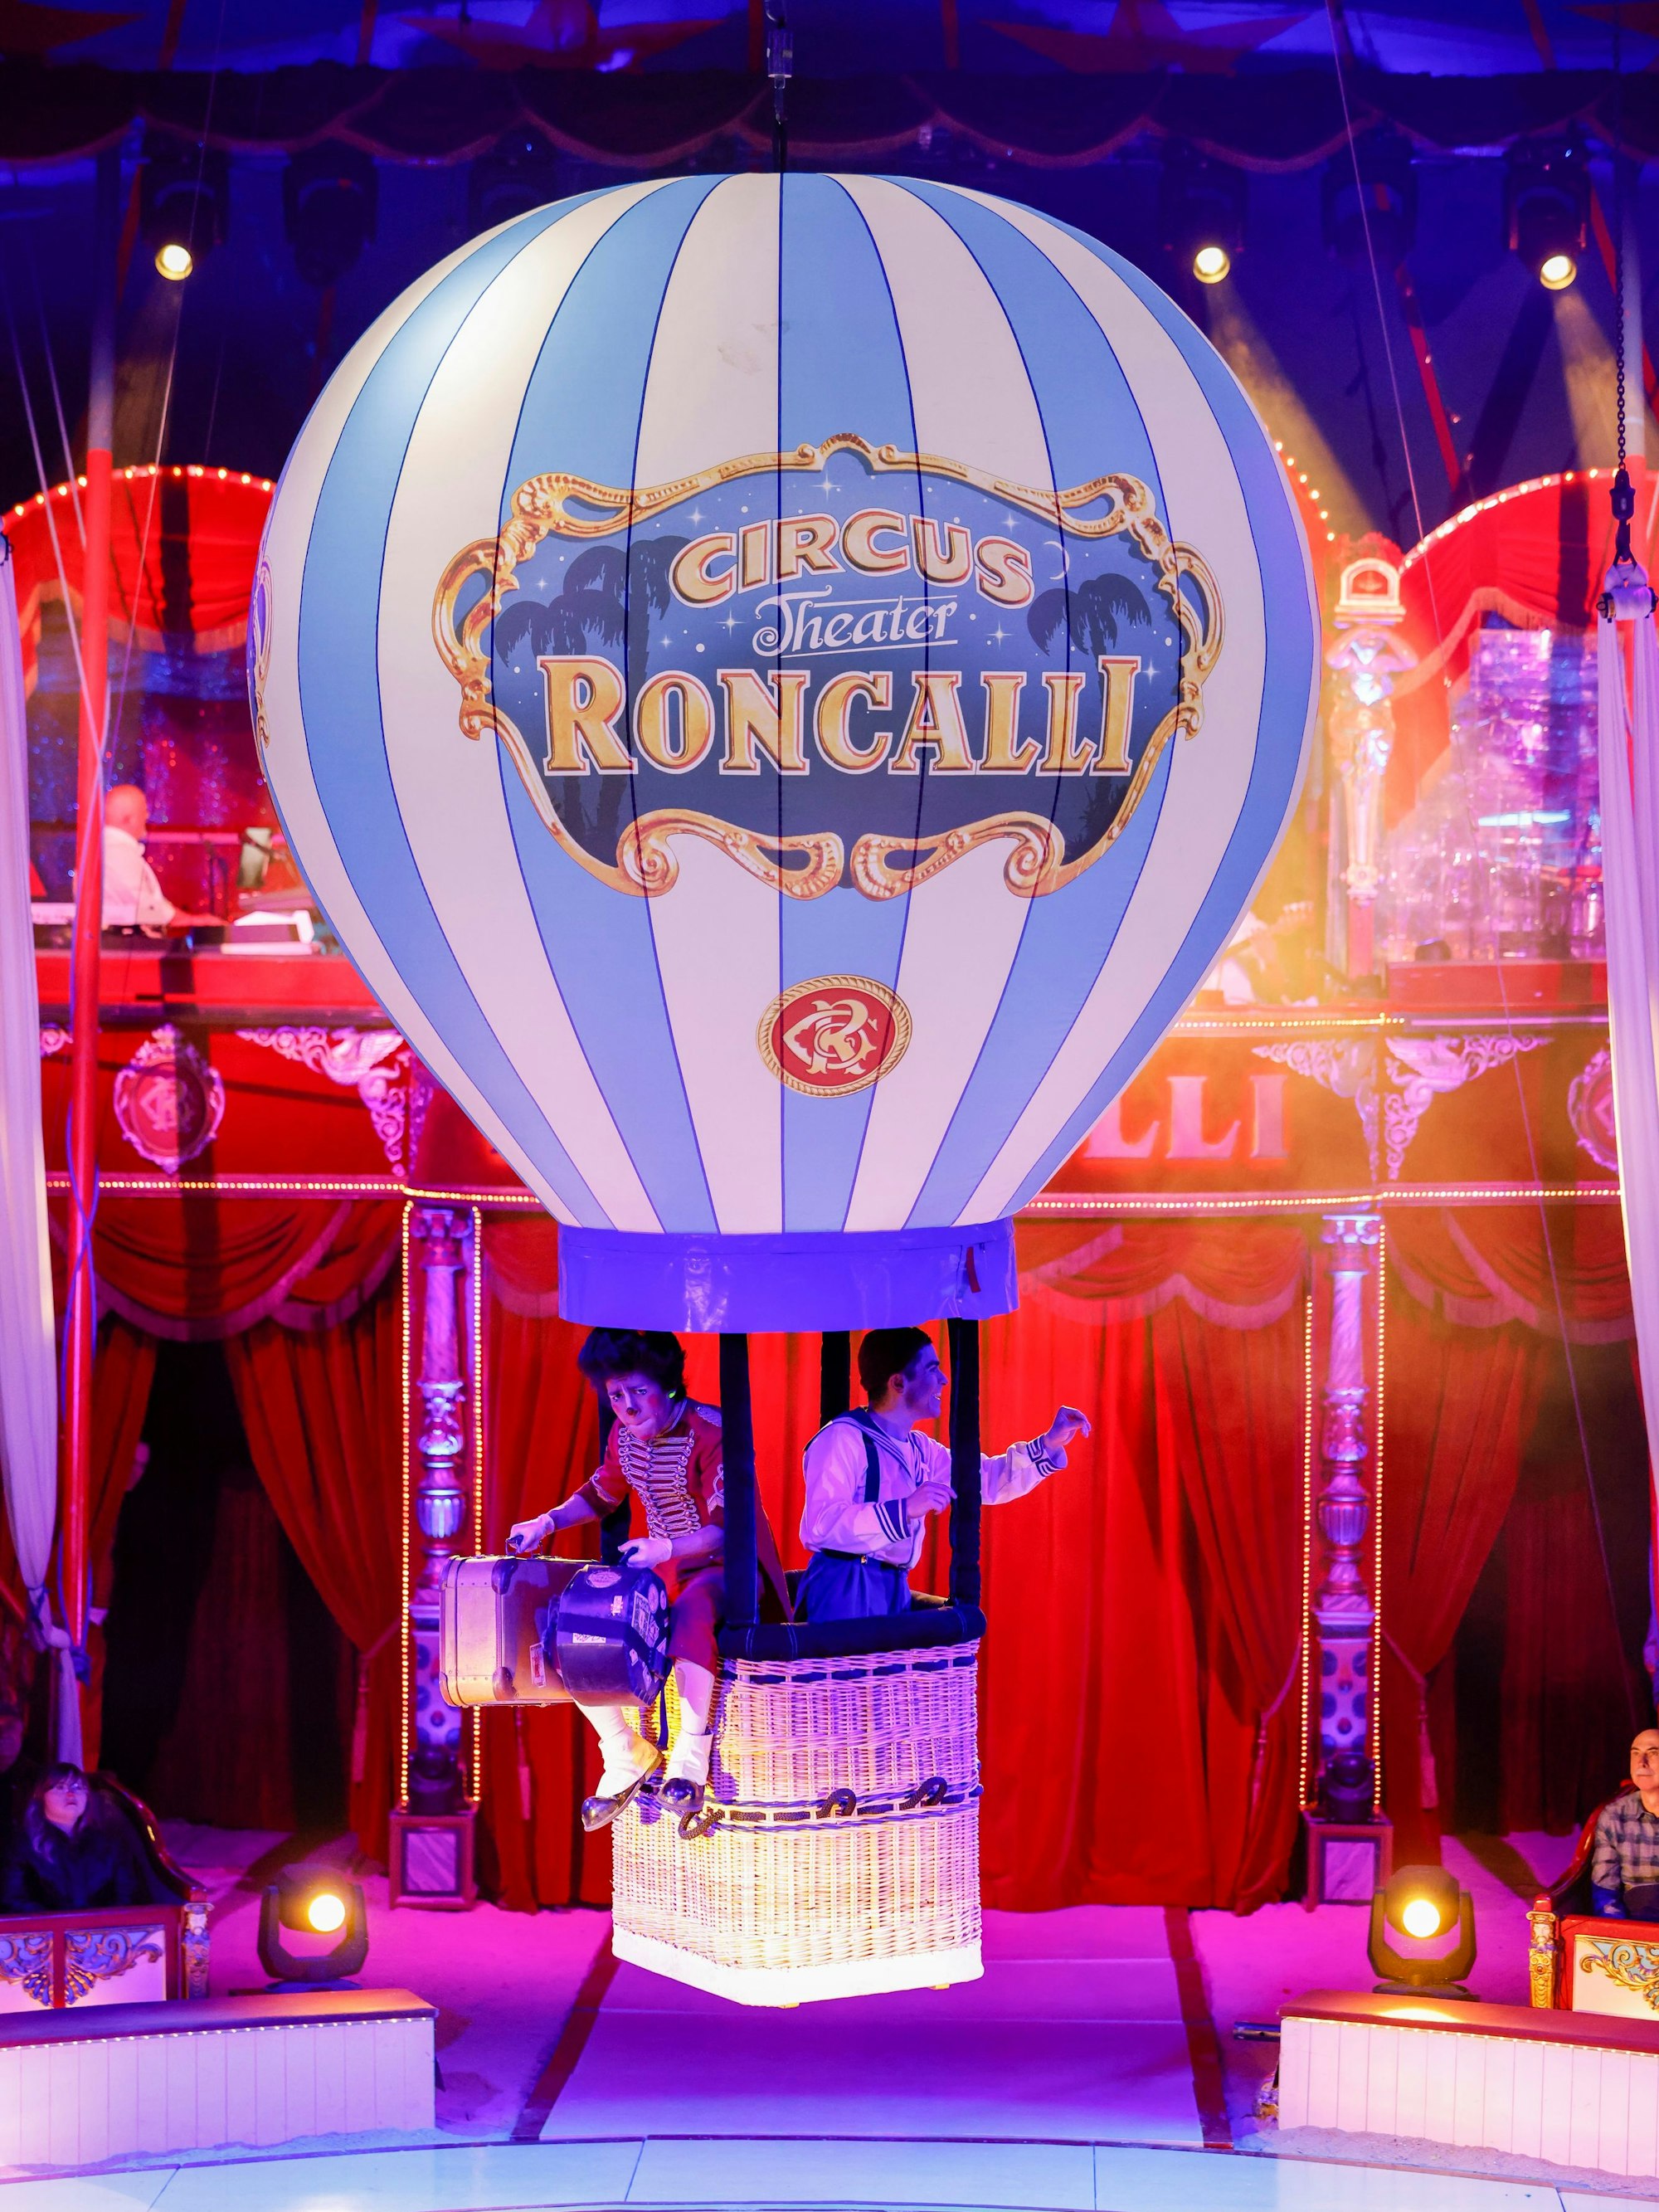 Der Roncalli-Ballon landet in der Manege.